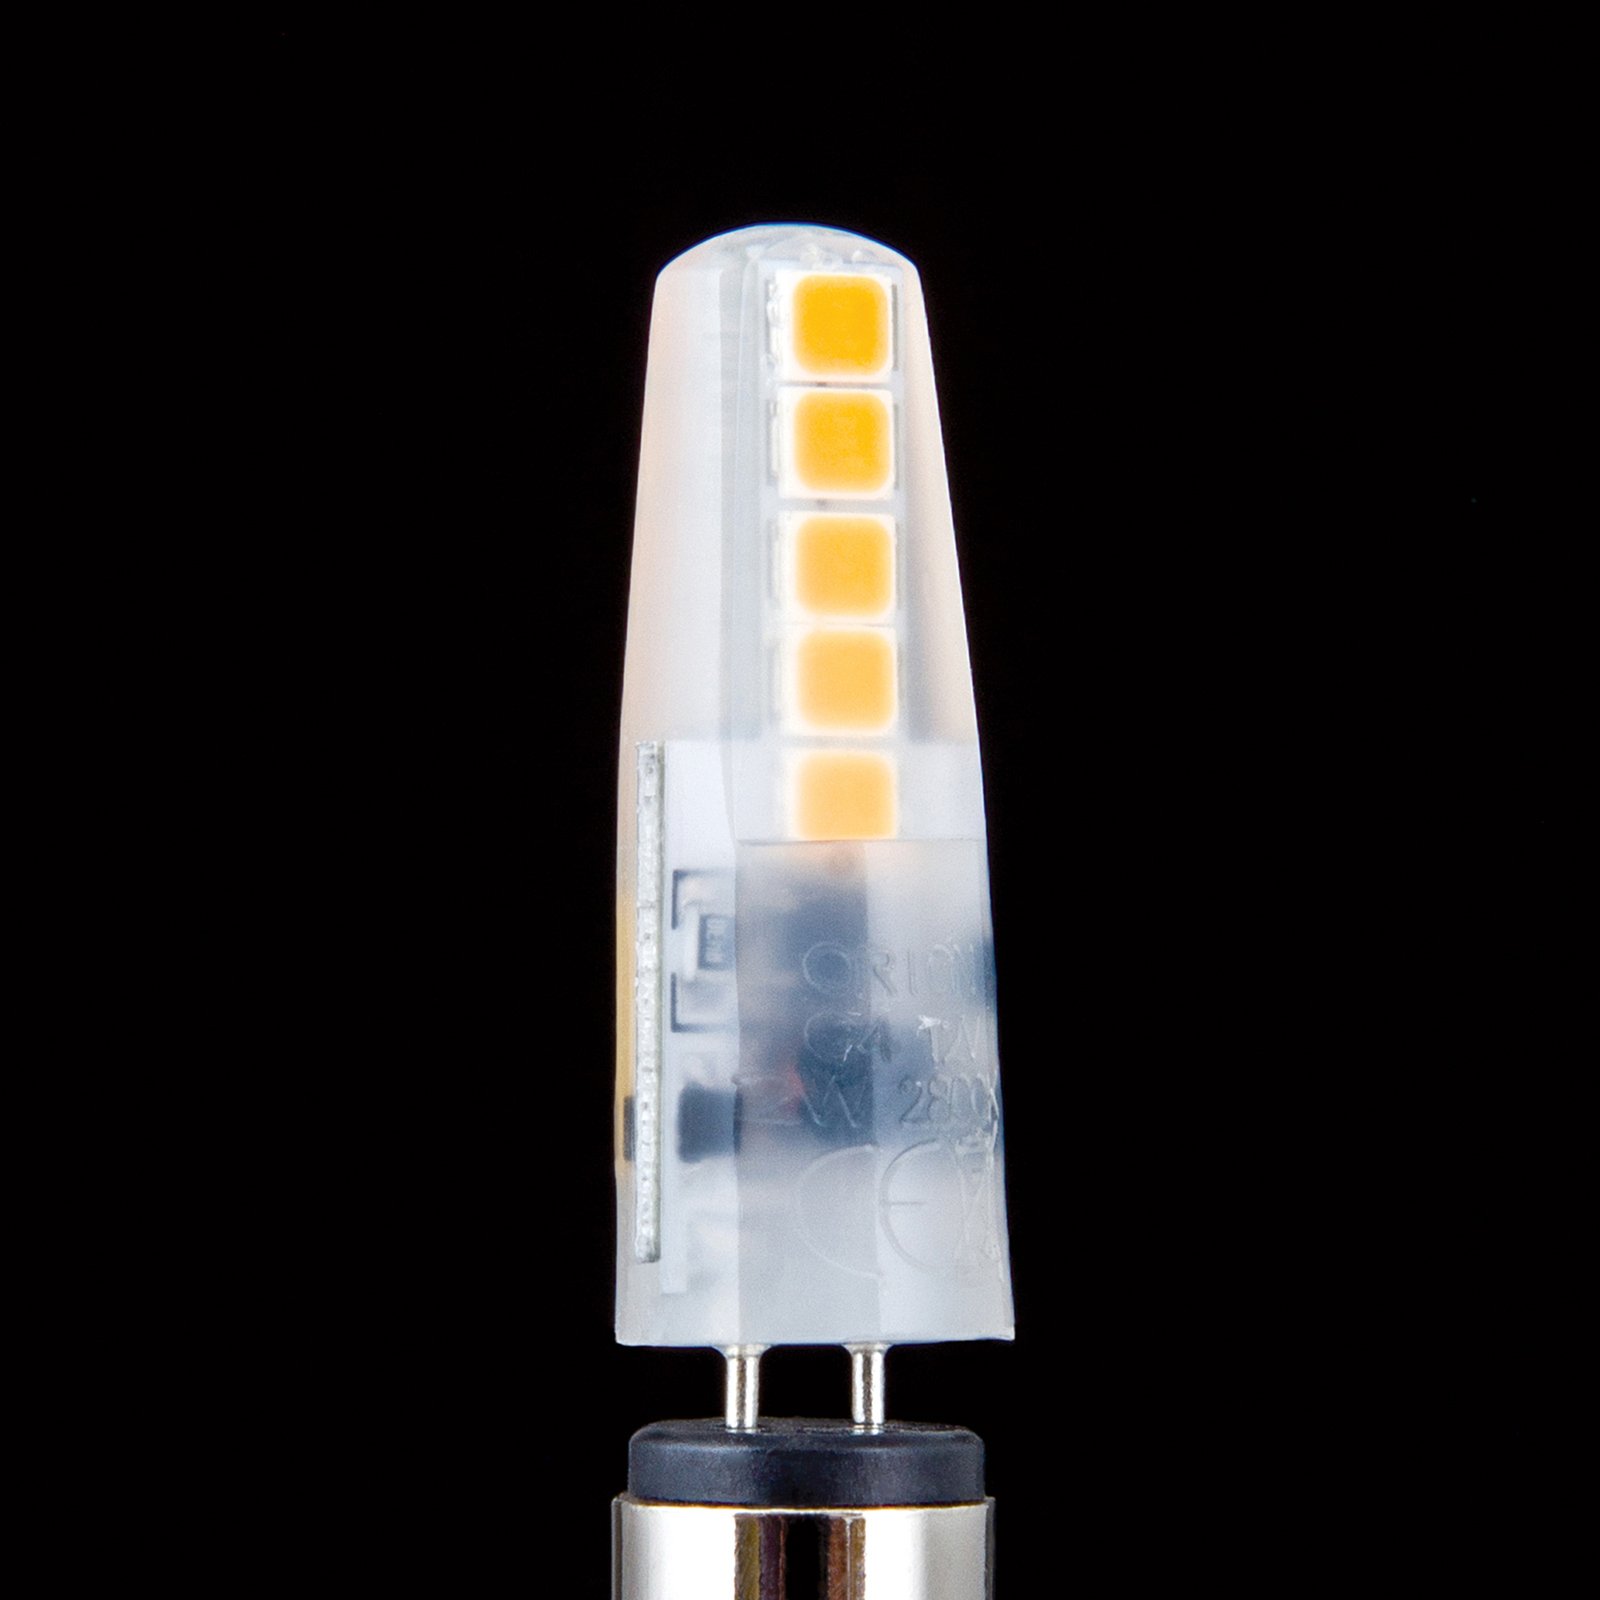 Bi-pin LED bulb G4 12 V 1.8 W 2,700 K